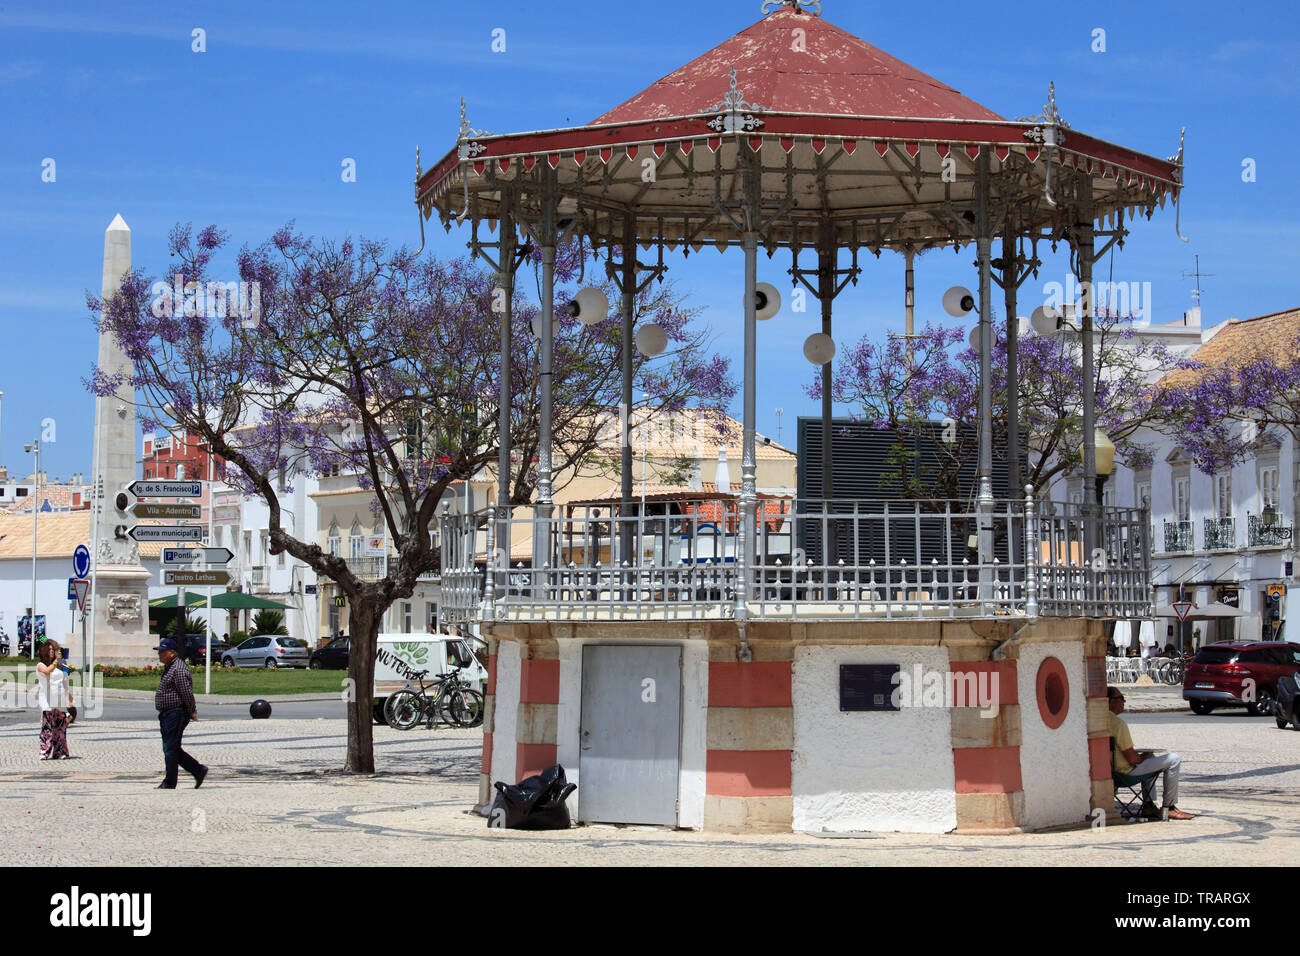 Portugal, Algarve, Faro, kiosk, street scene, Stock Photo